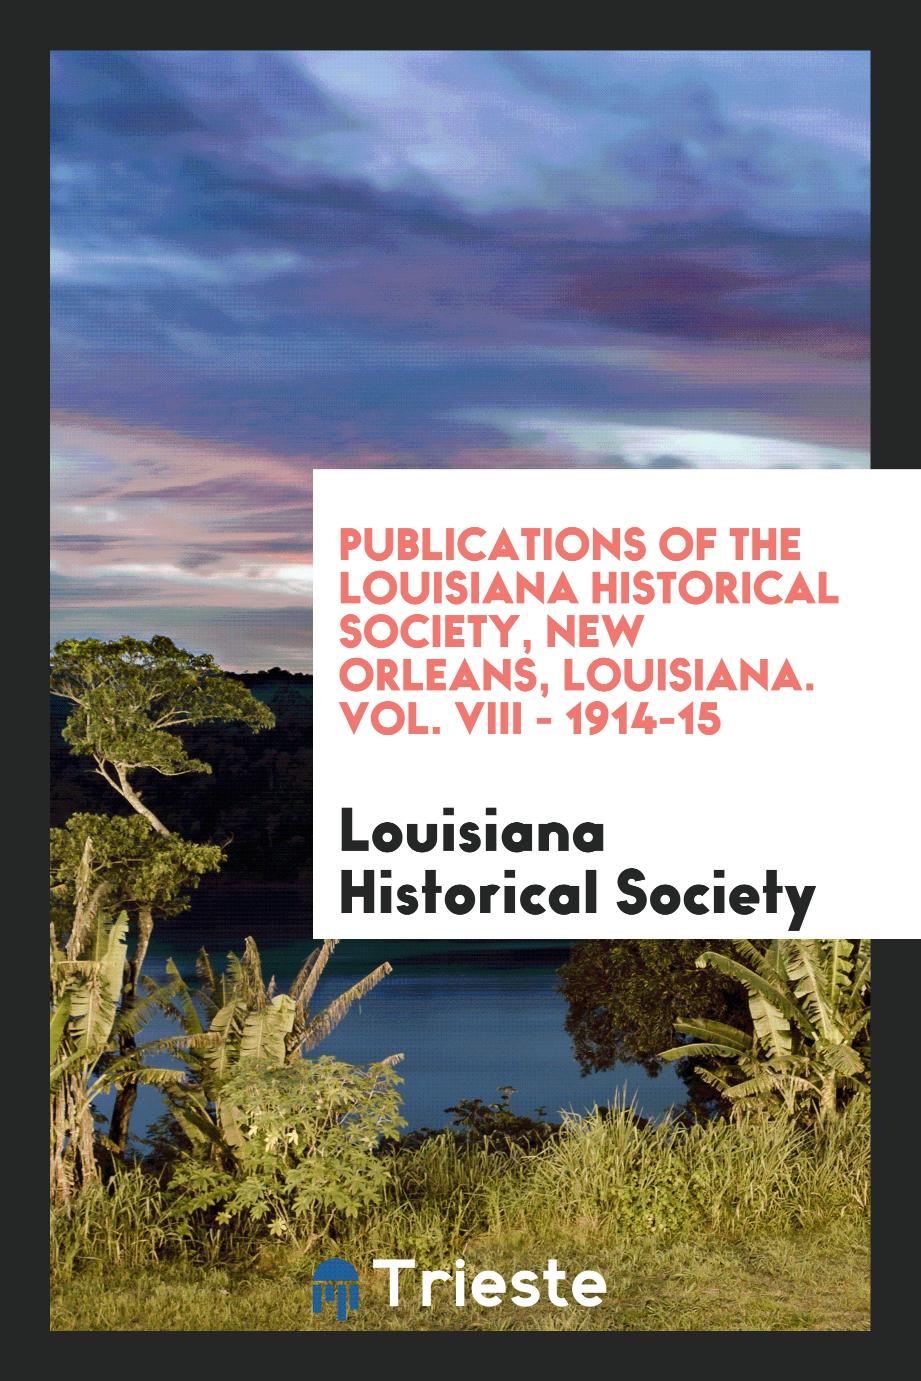 Publications of the Louisiana Historical Society, New Orleans, Louisiana. Vol. VIII - 1914-15